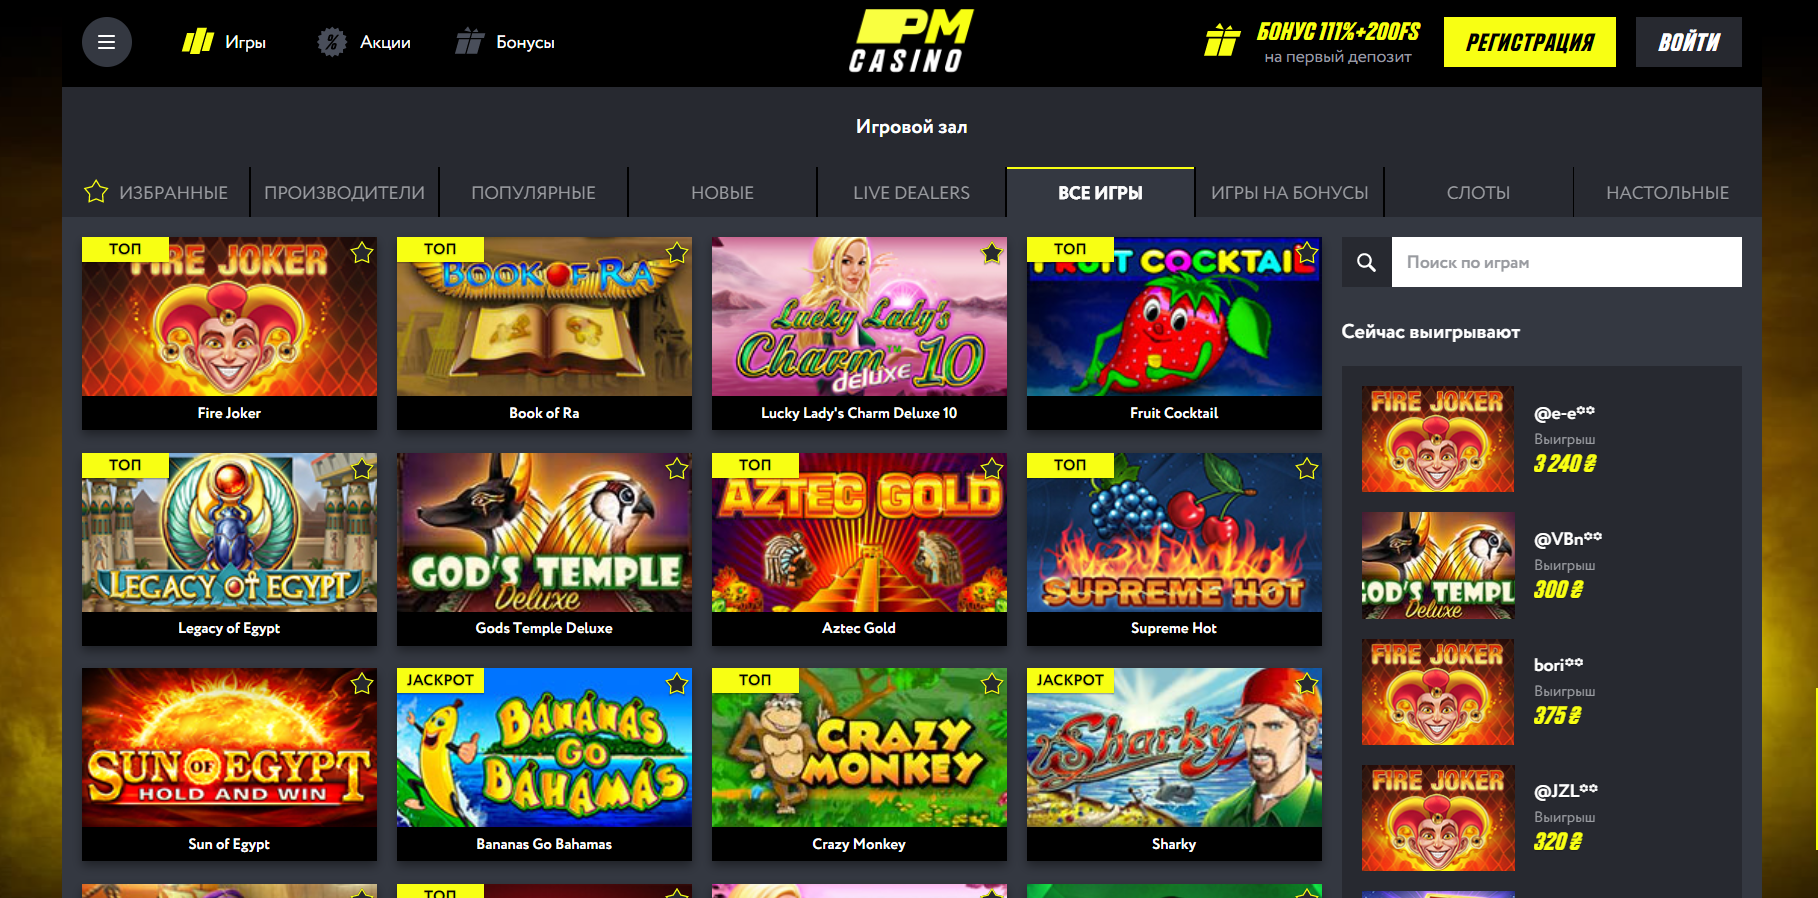 Зеркало официального сайта Париматч казино